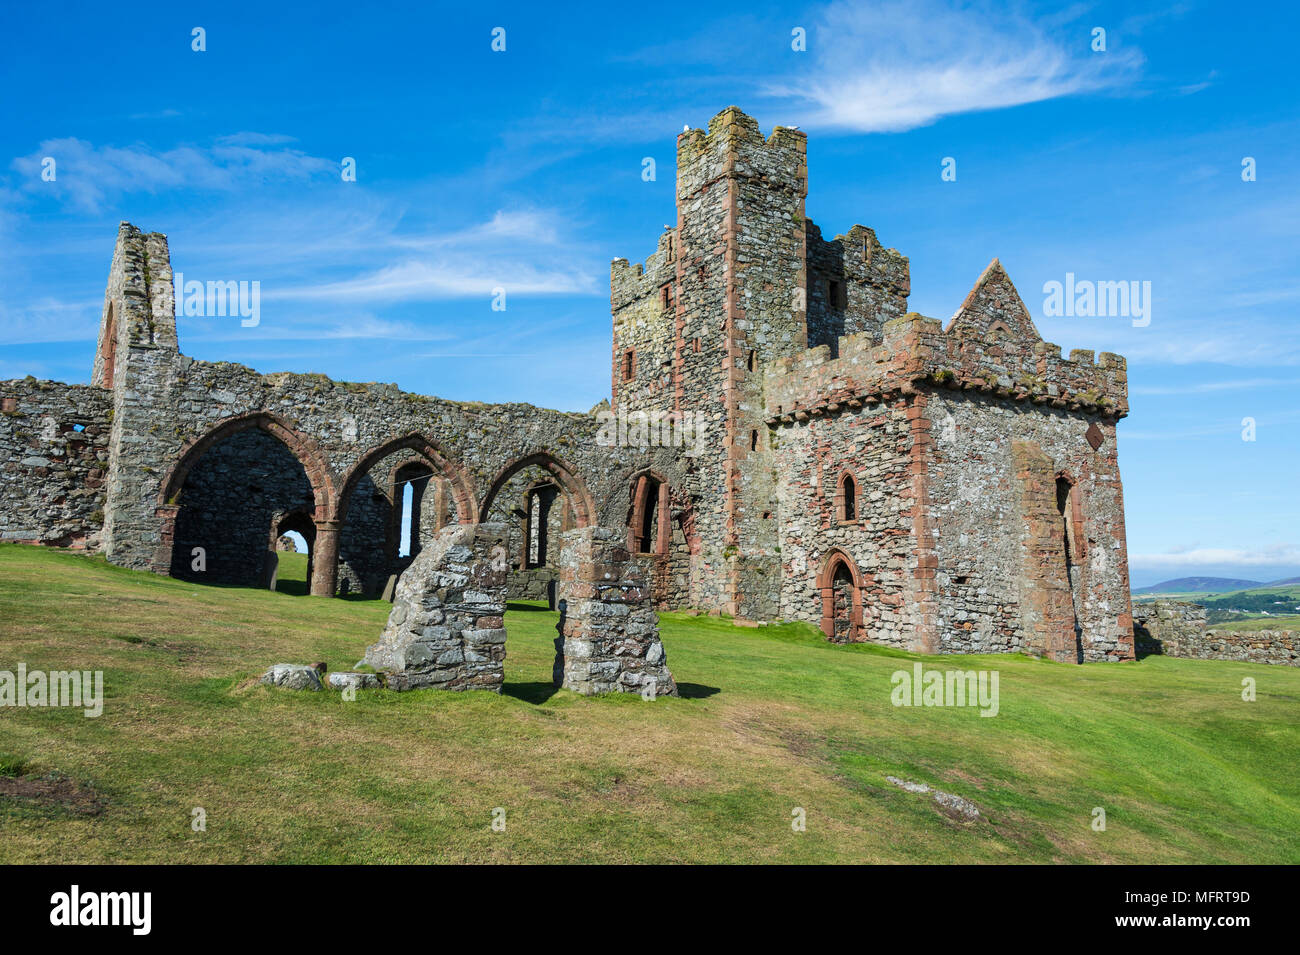 Peel castle, Peel, Isle of Man, United Kingdom Stock Photo